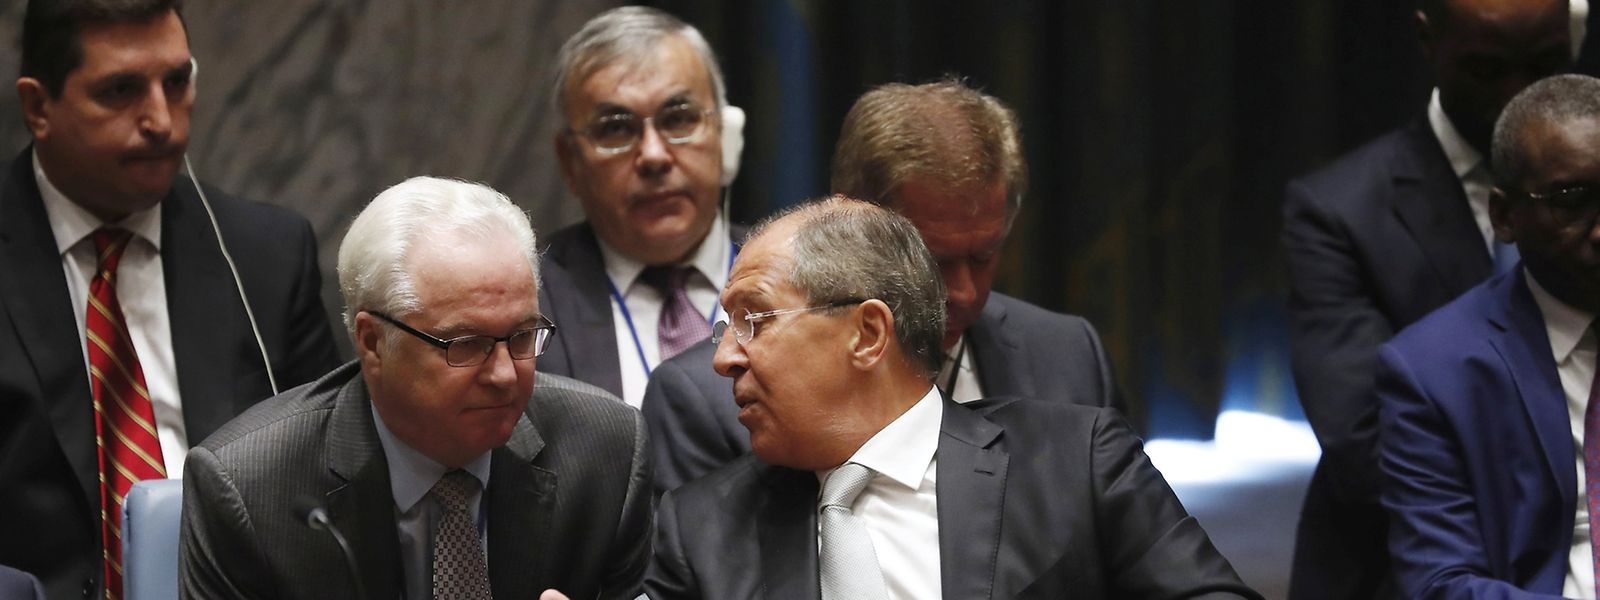 Der russische Außenminister Sergei Lavrov zeigte sich während der Debatten teilweise ungehalten.